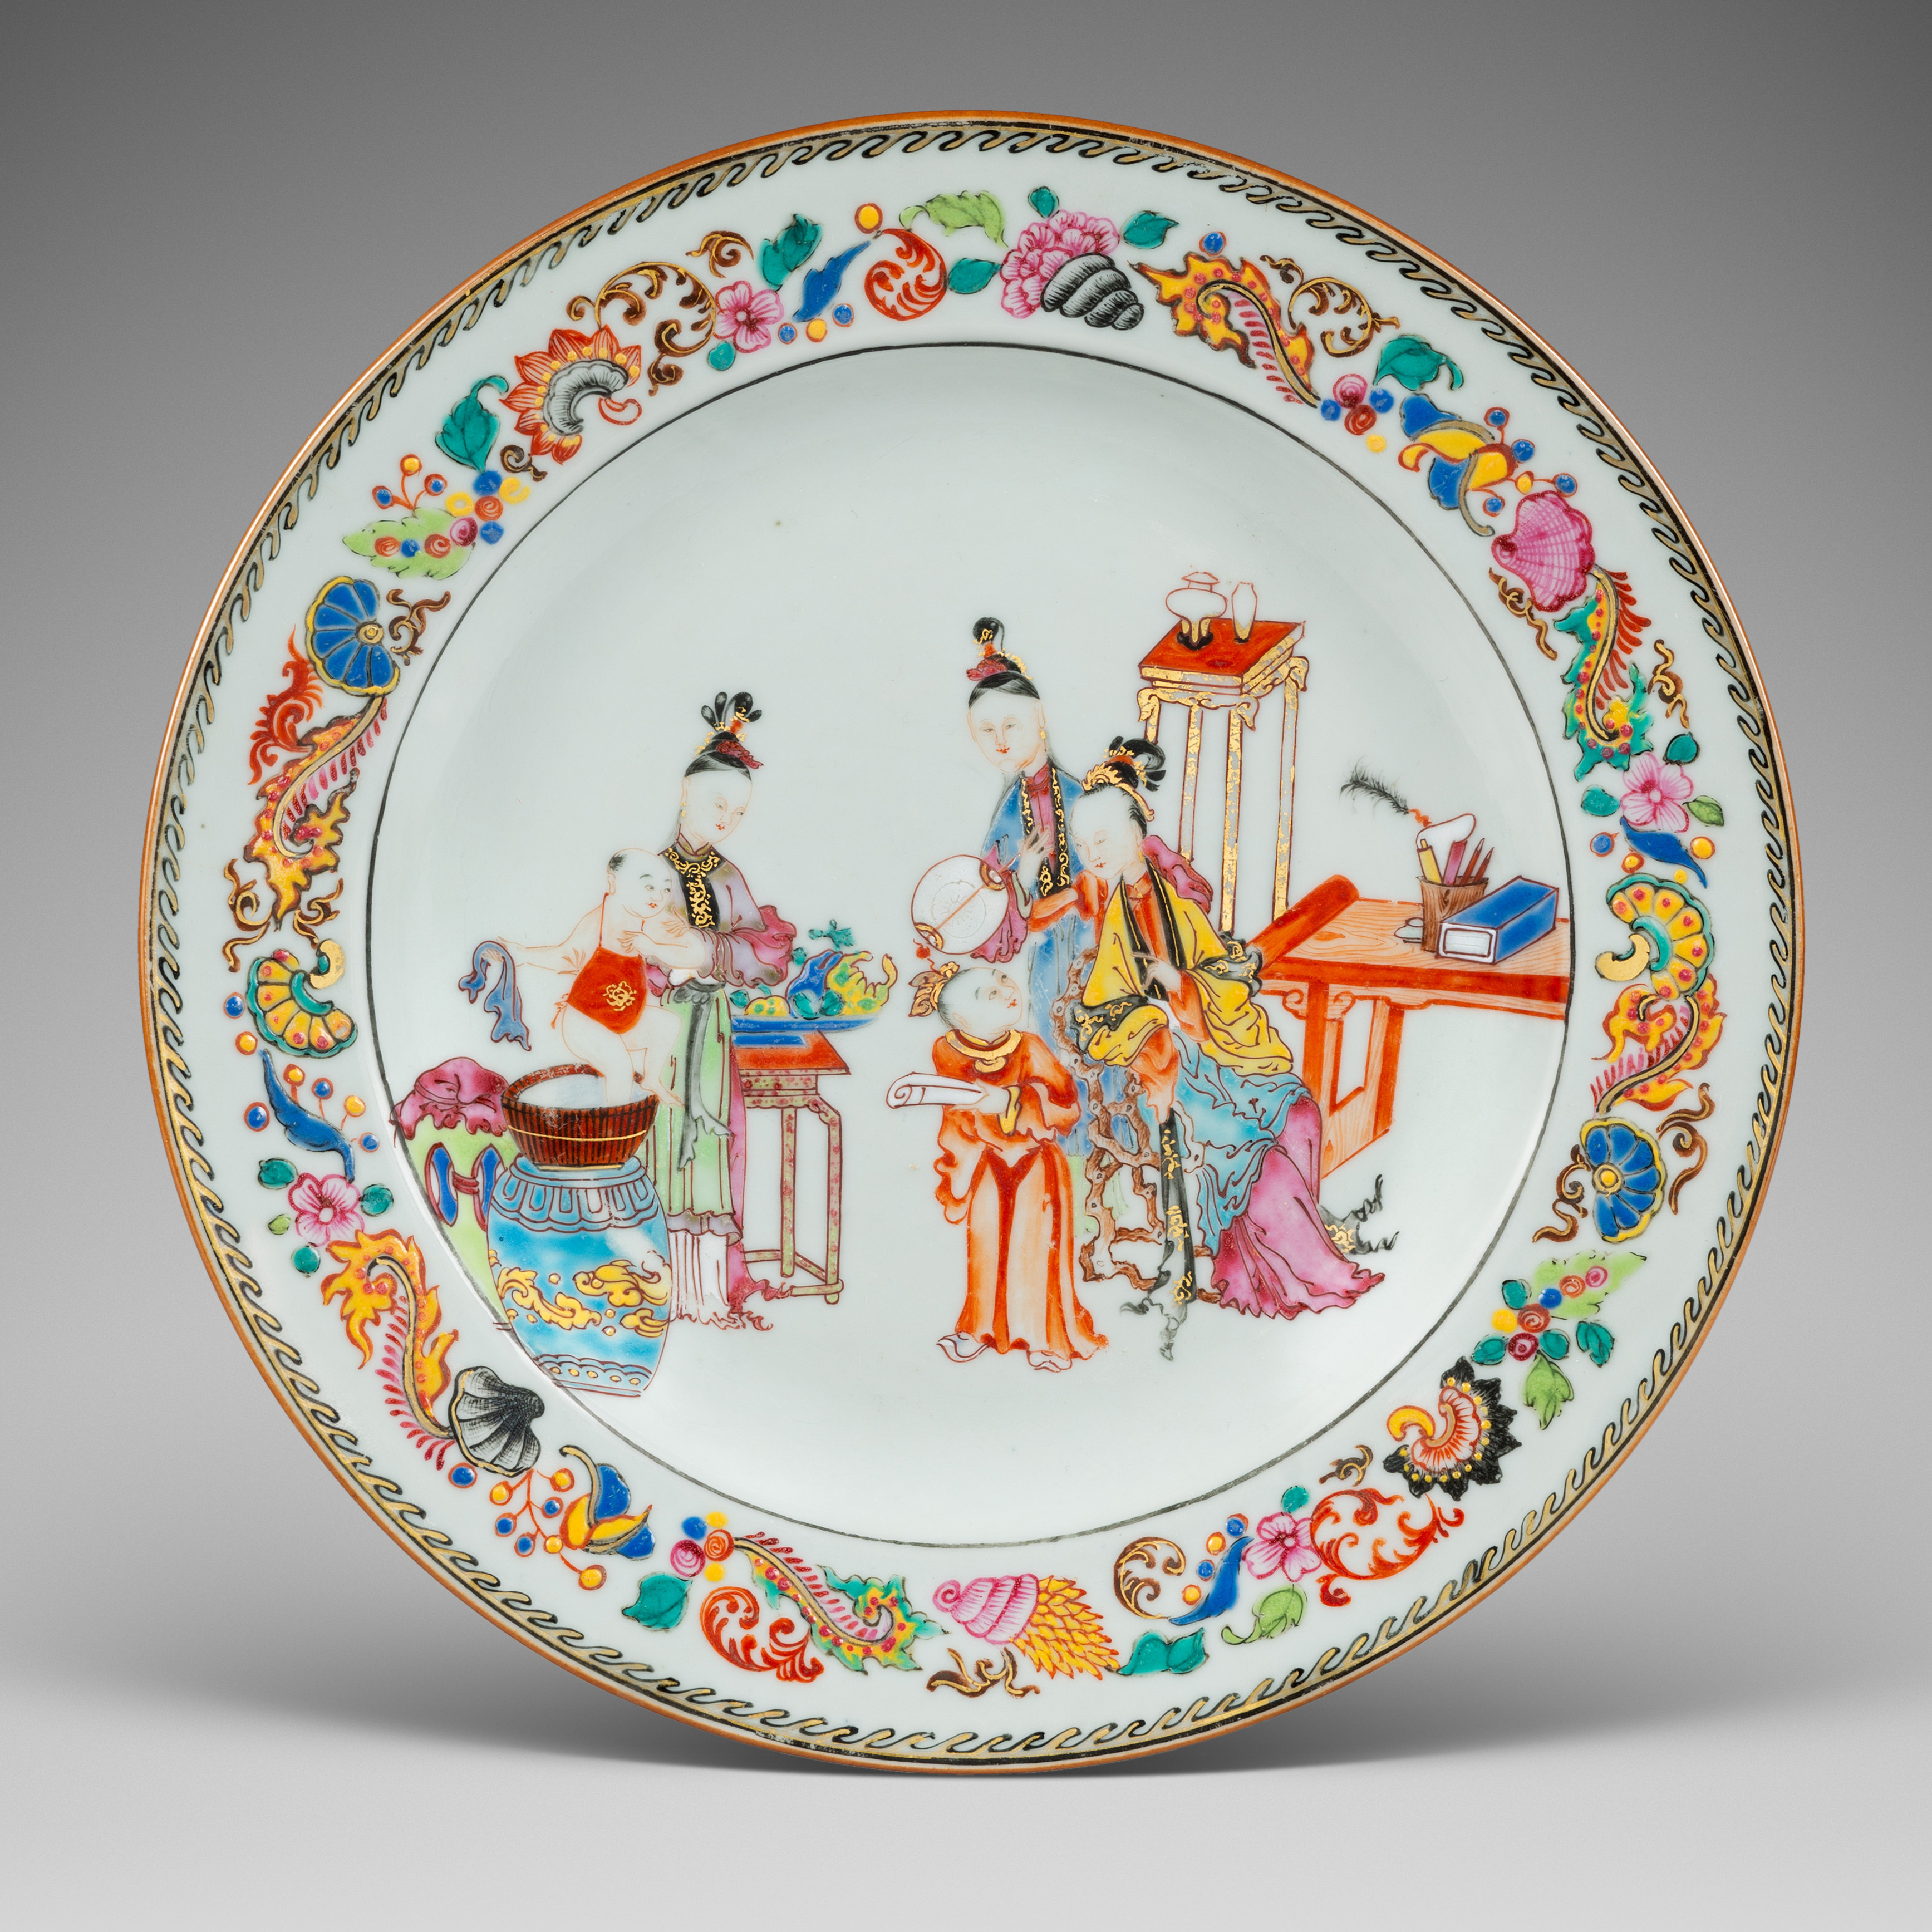 Famille rose Porcelain Yongzheng (1723-1735) / early Qianlong period (1736-1795), China